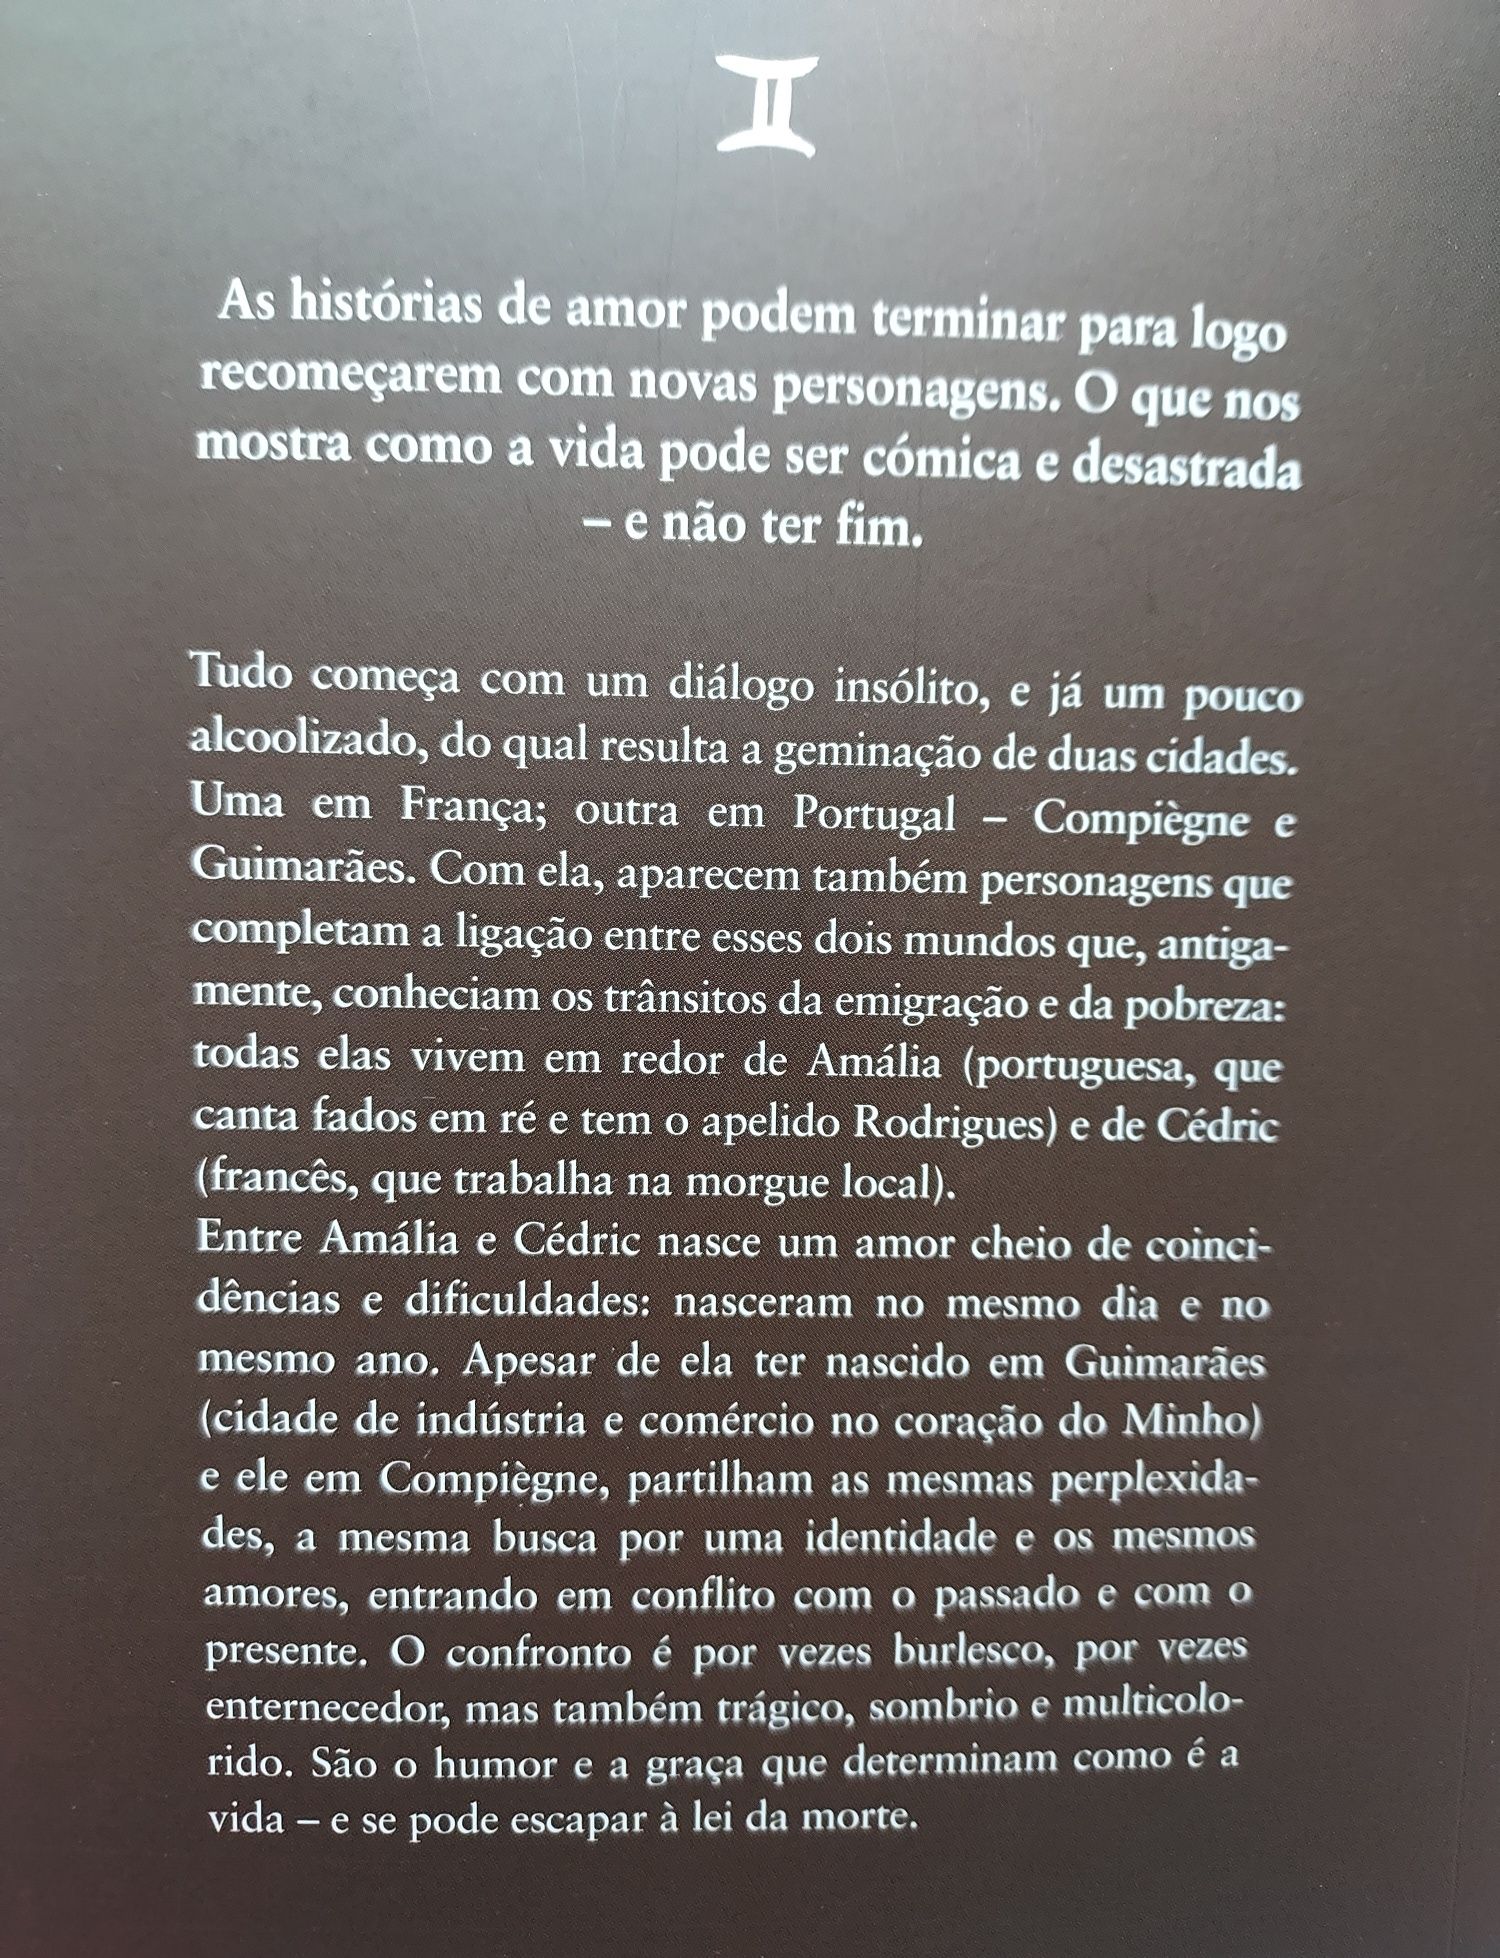 Livro "Vida e morte nas cidades geminadas" de Sérgio Godinho